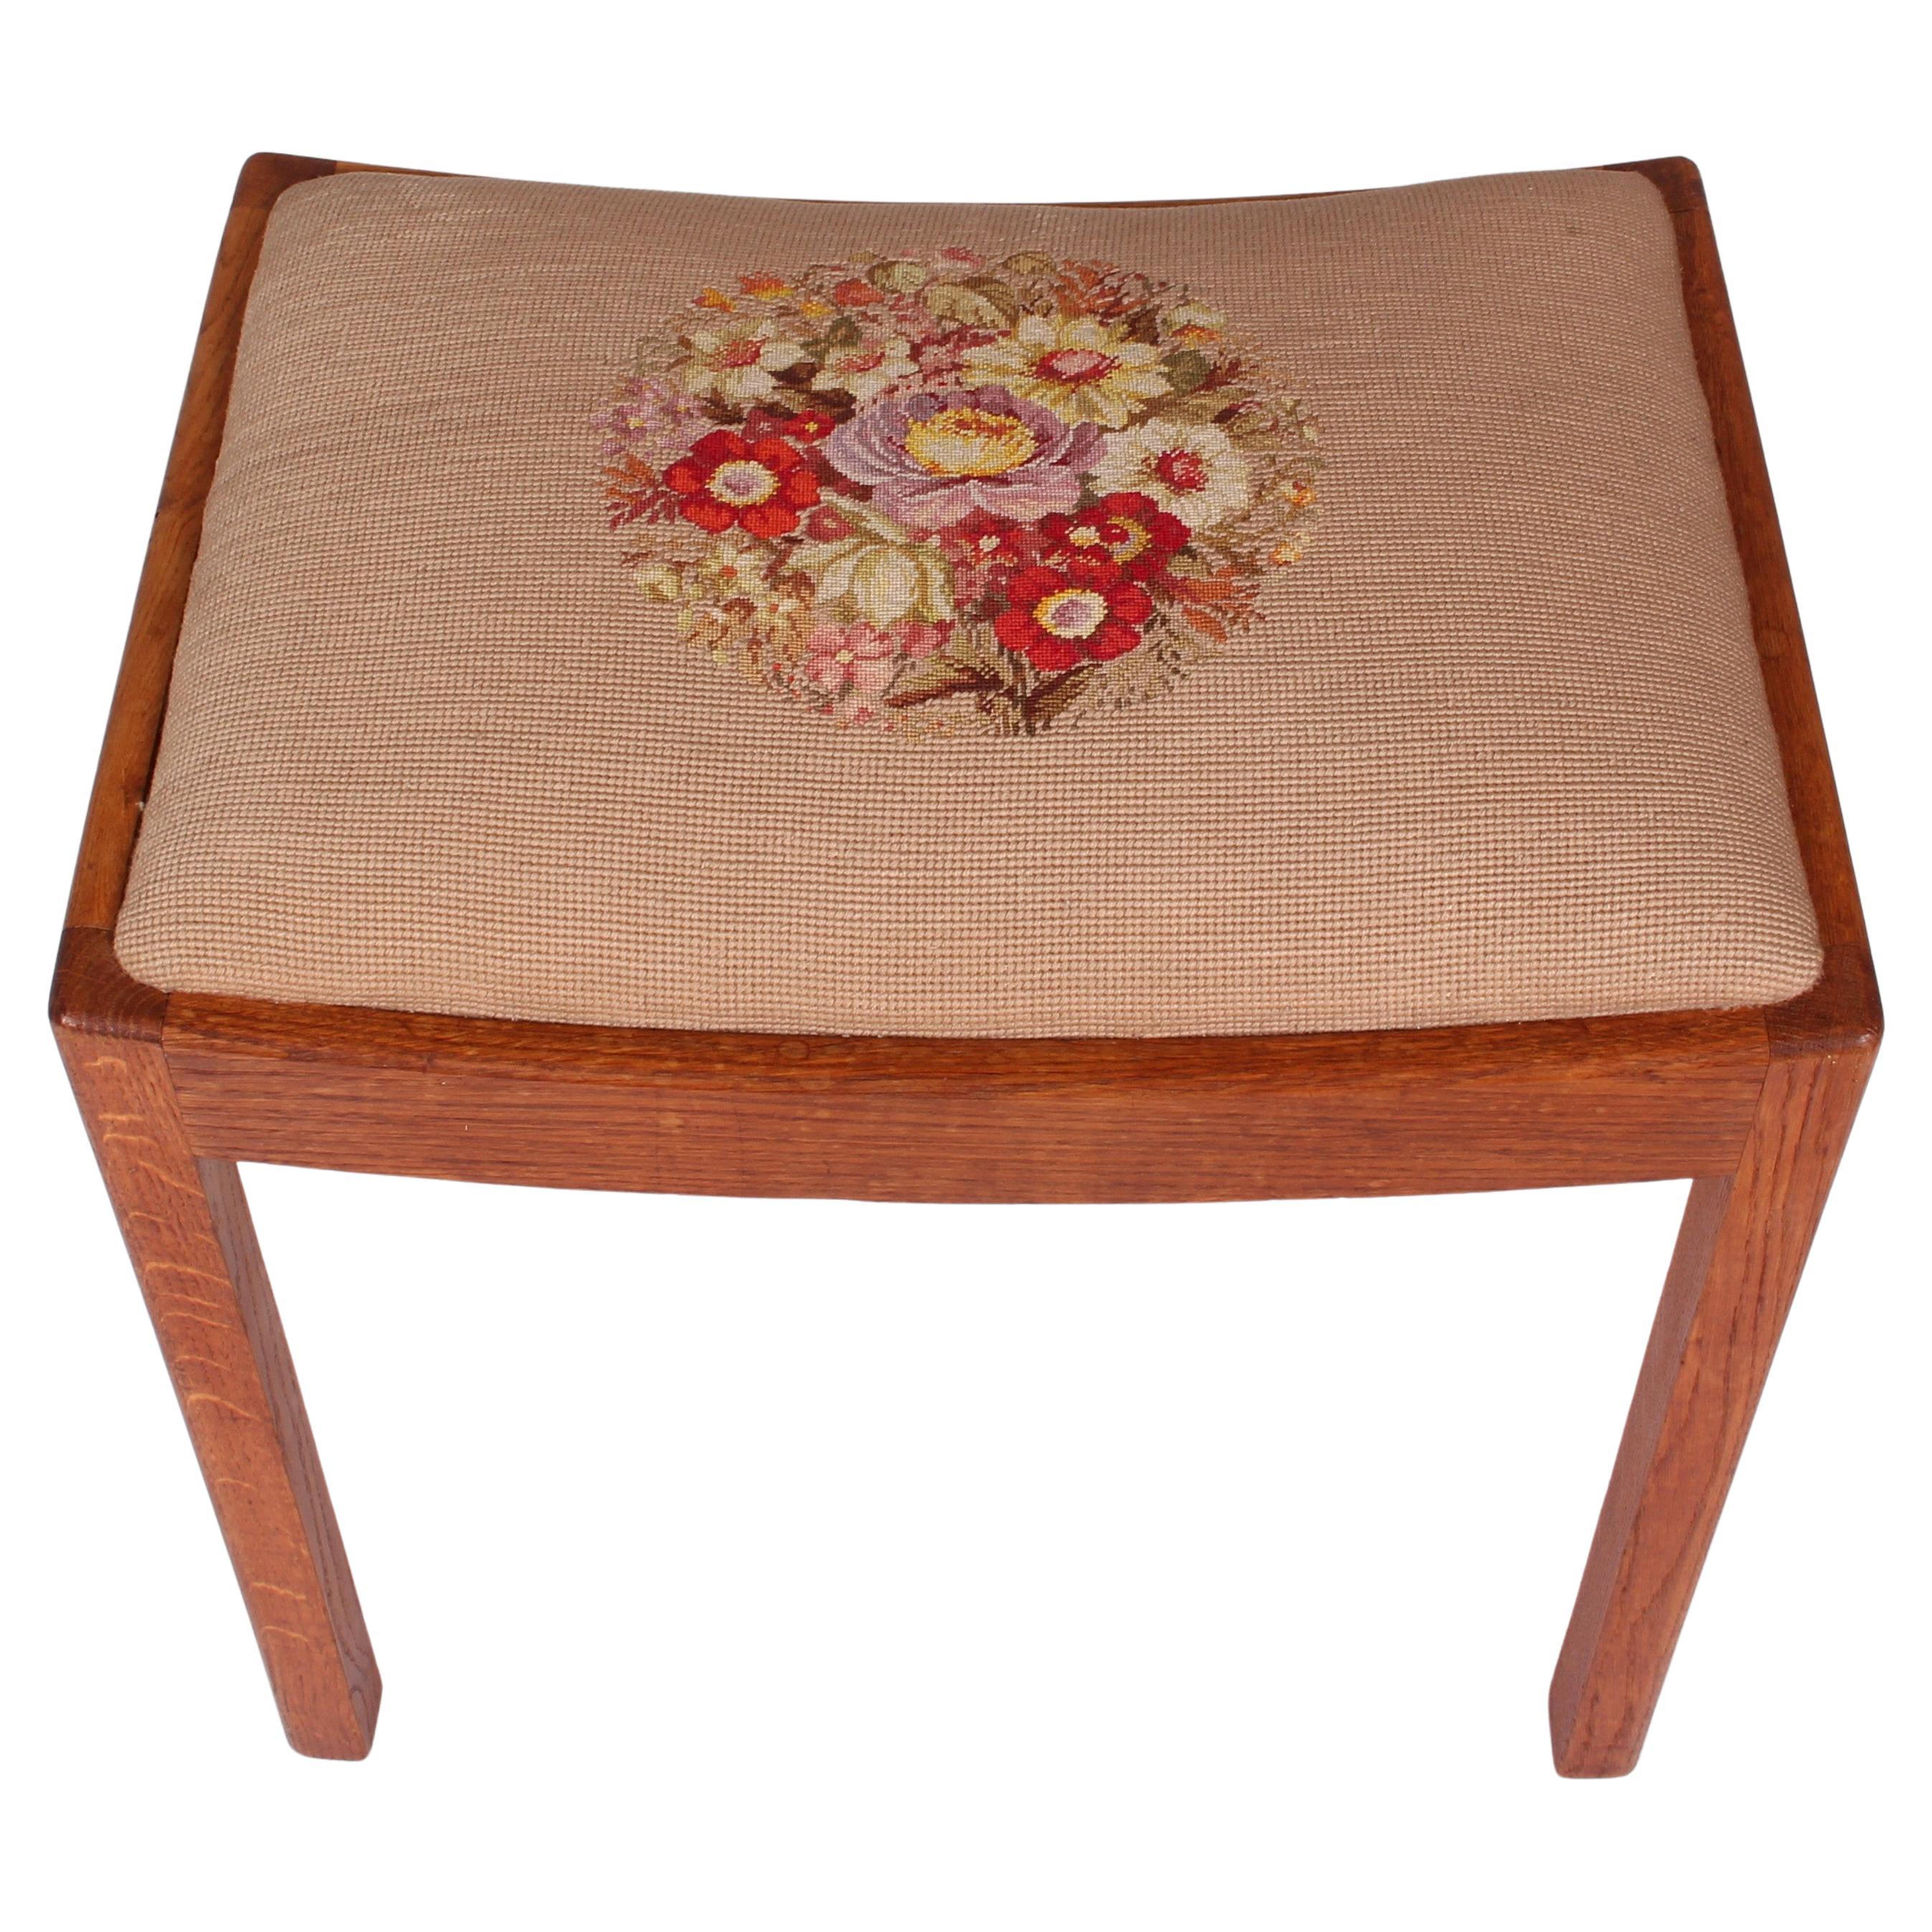 Art Nouveau art nouveau oak stool chair Jugendstil Rabenau embroidery a. 1910 exc condition For Sale